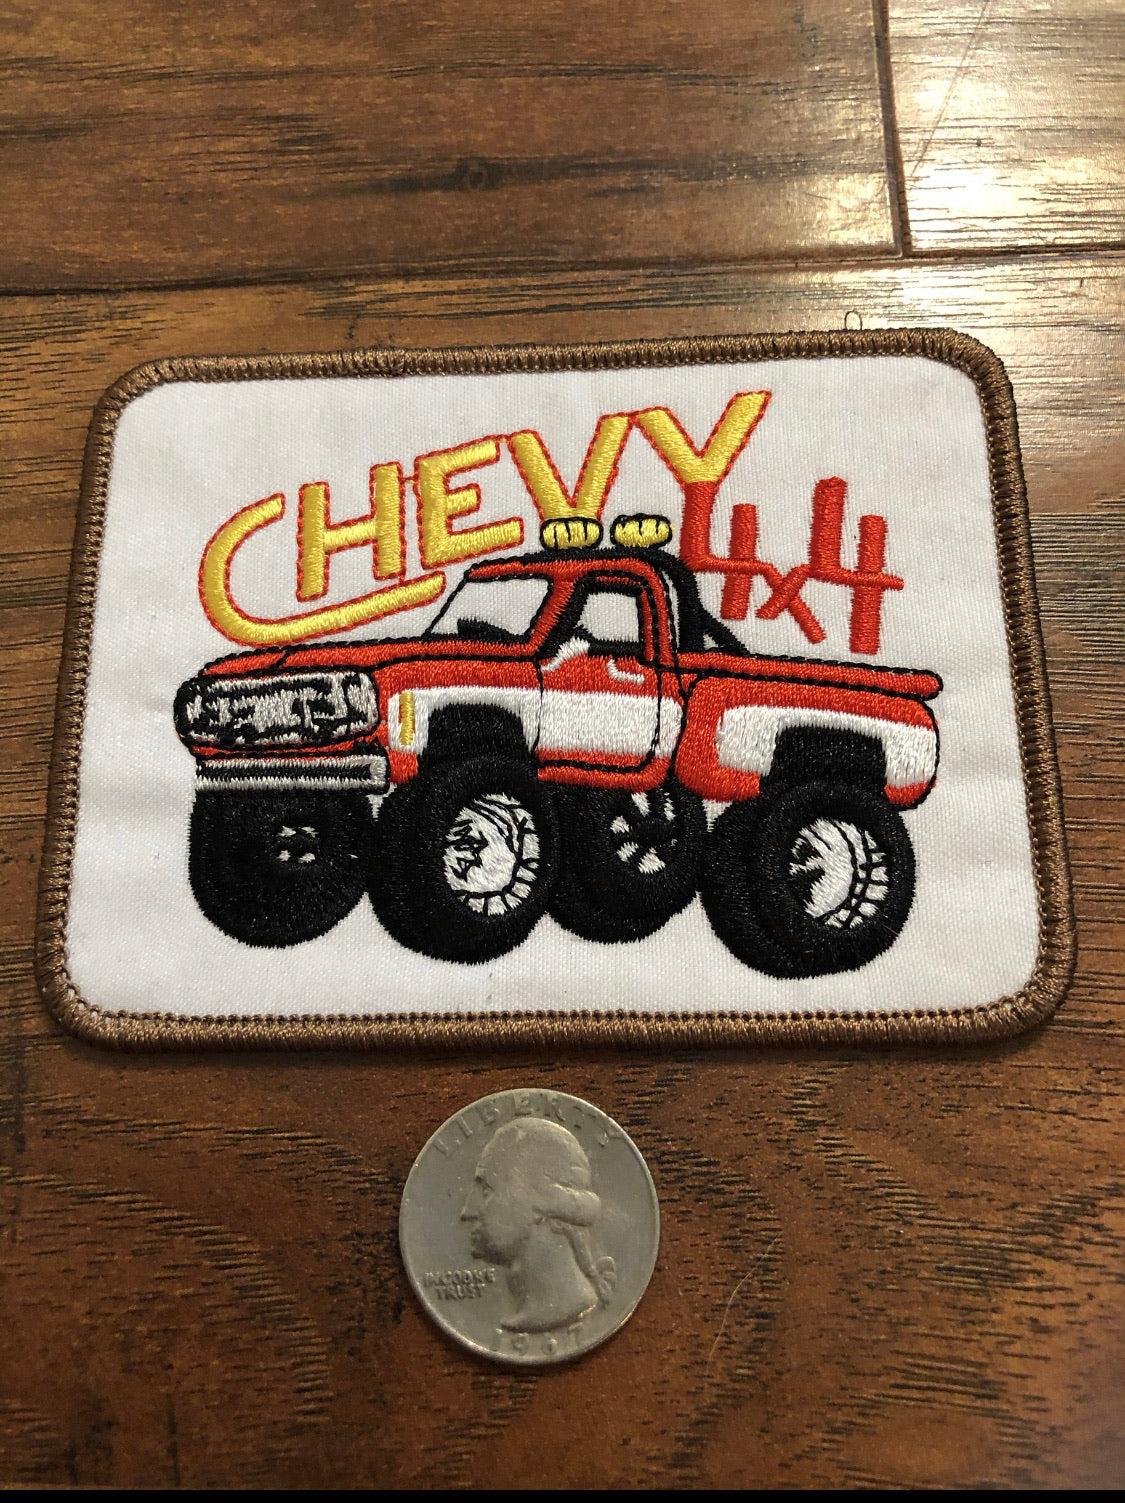 Chevy 4x4